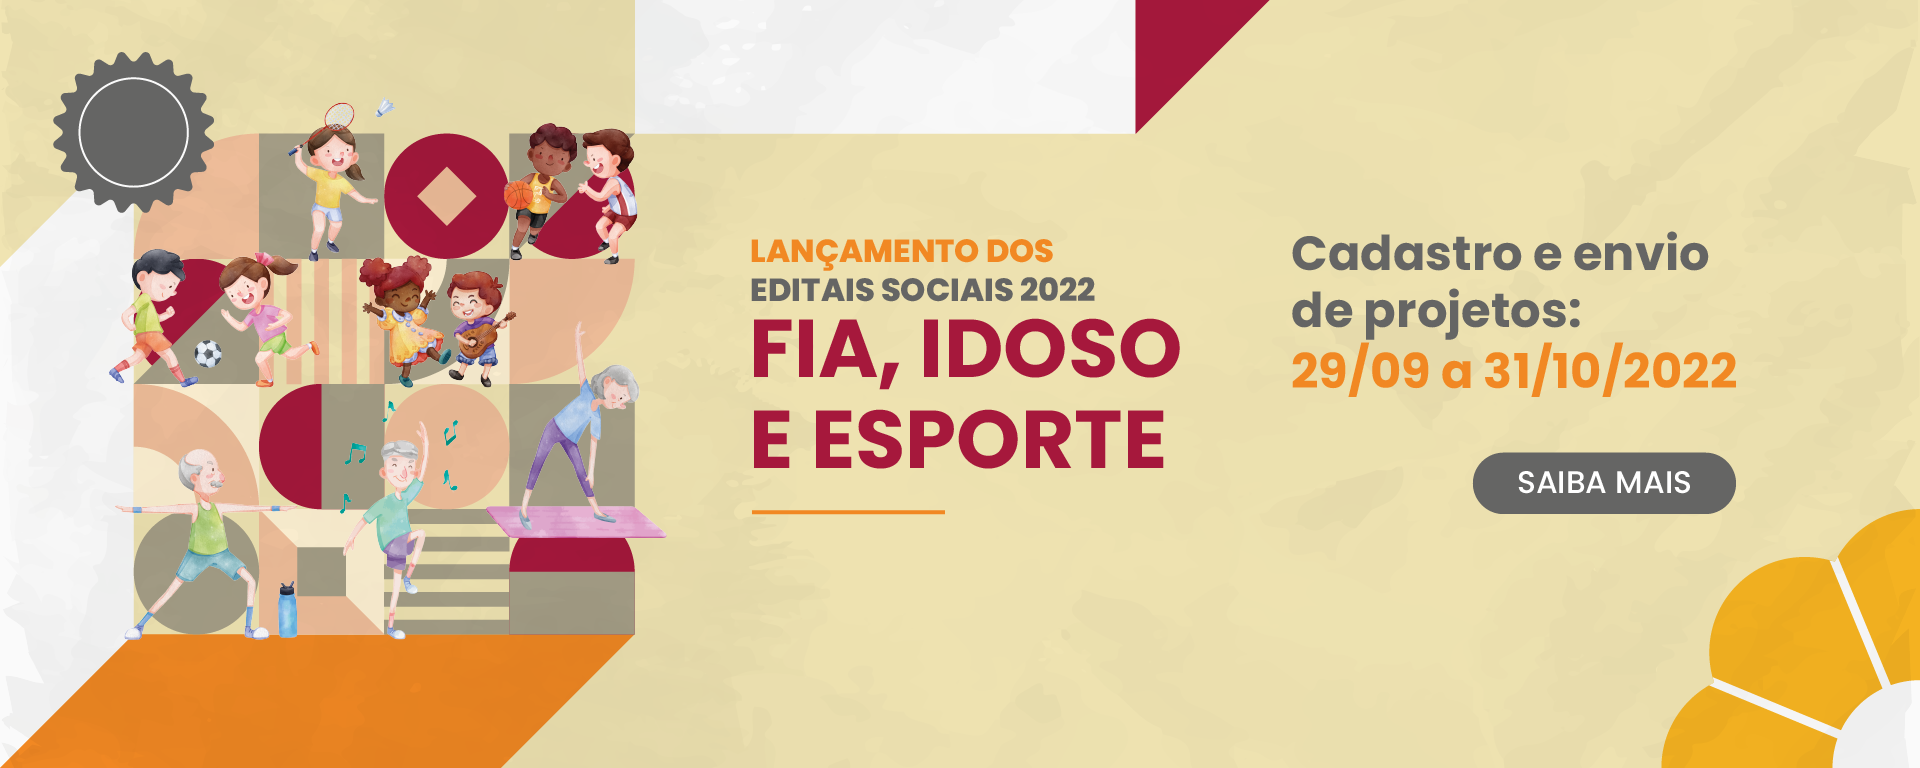 Lançamento dos Editais Sociais 2022. FIA, Idoso e Esporte. Cadastro e envio de projetos: 29/09 e 30/10/2022. Clique e saiba mais.